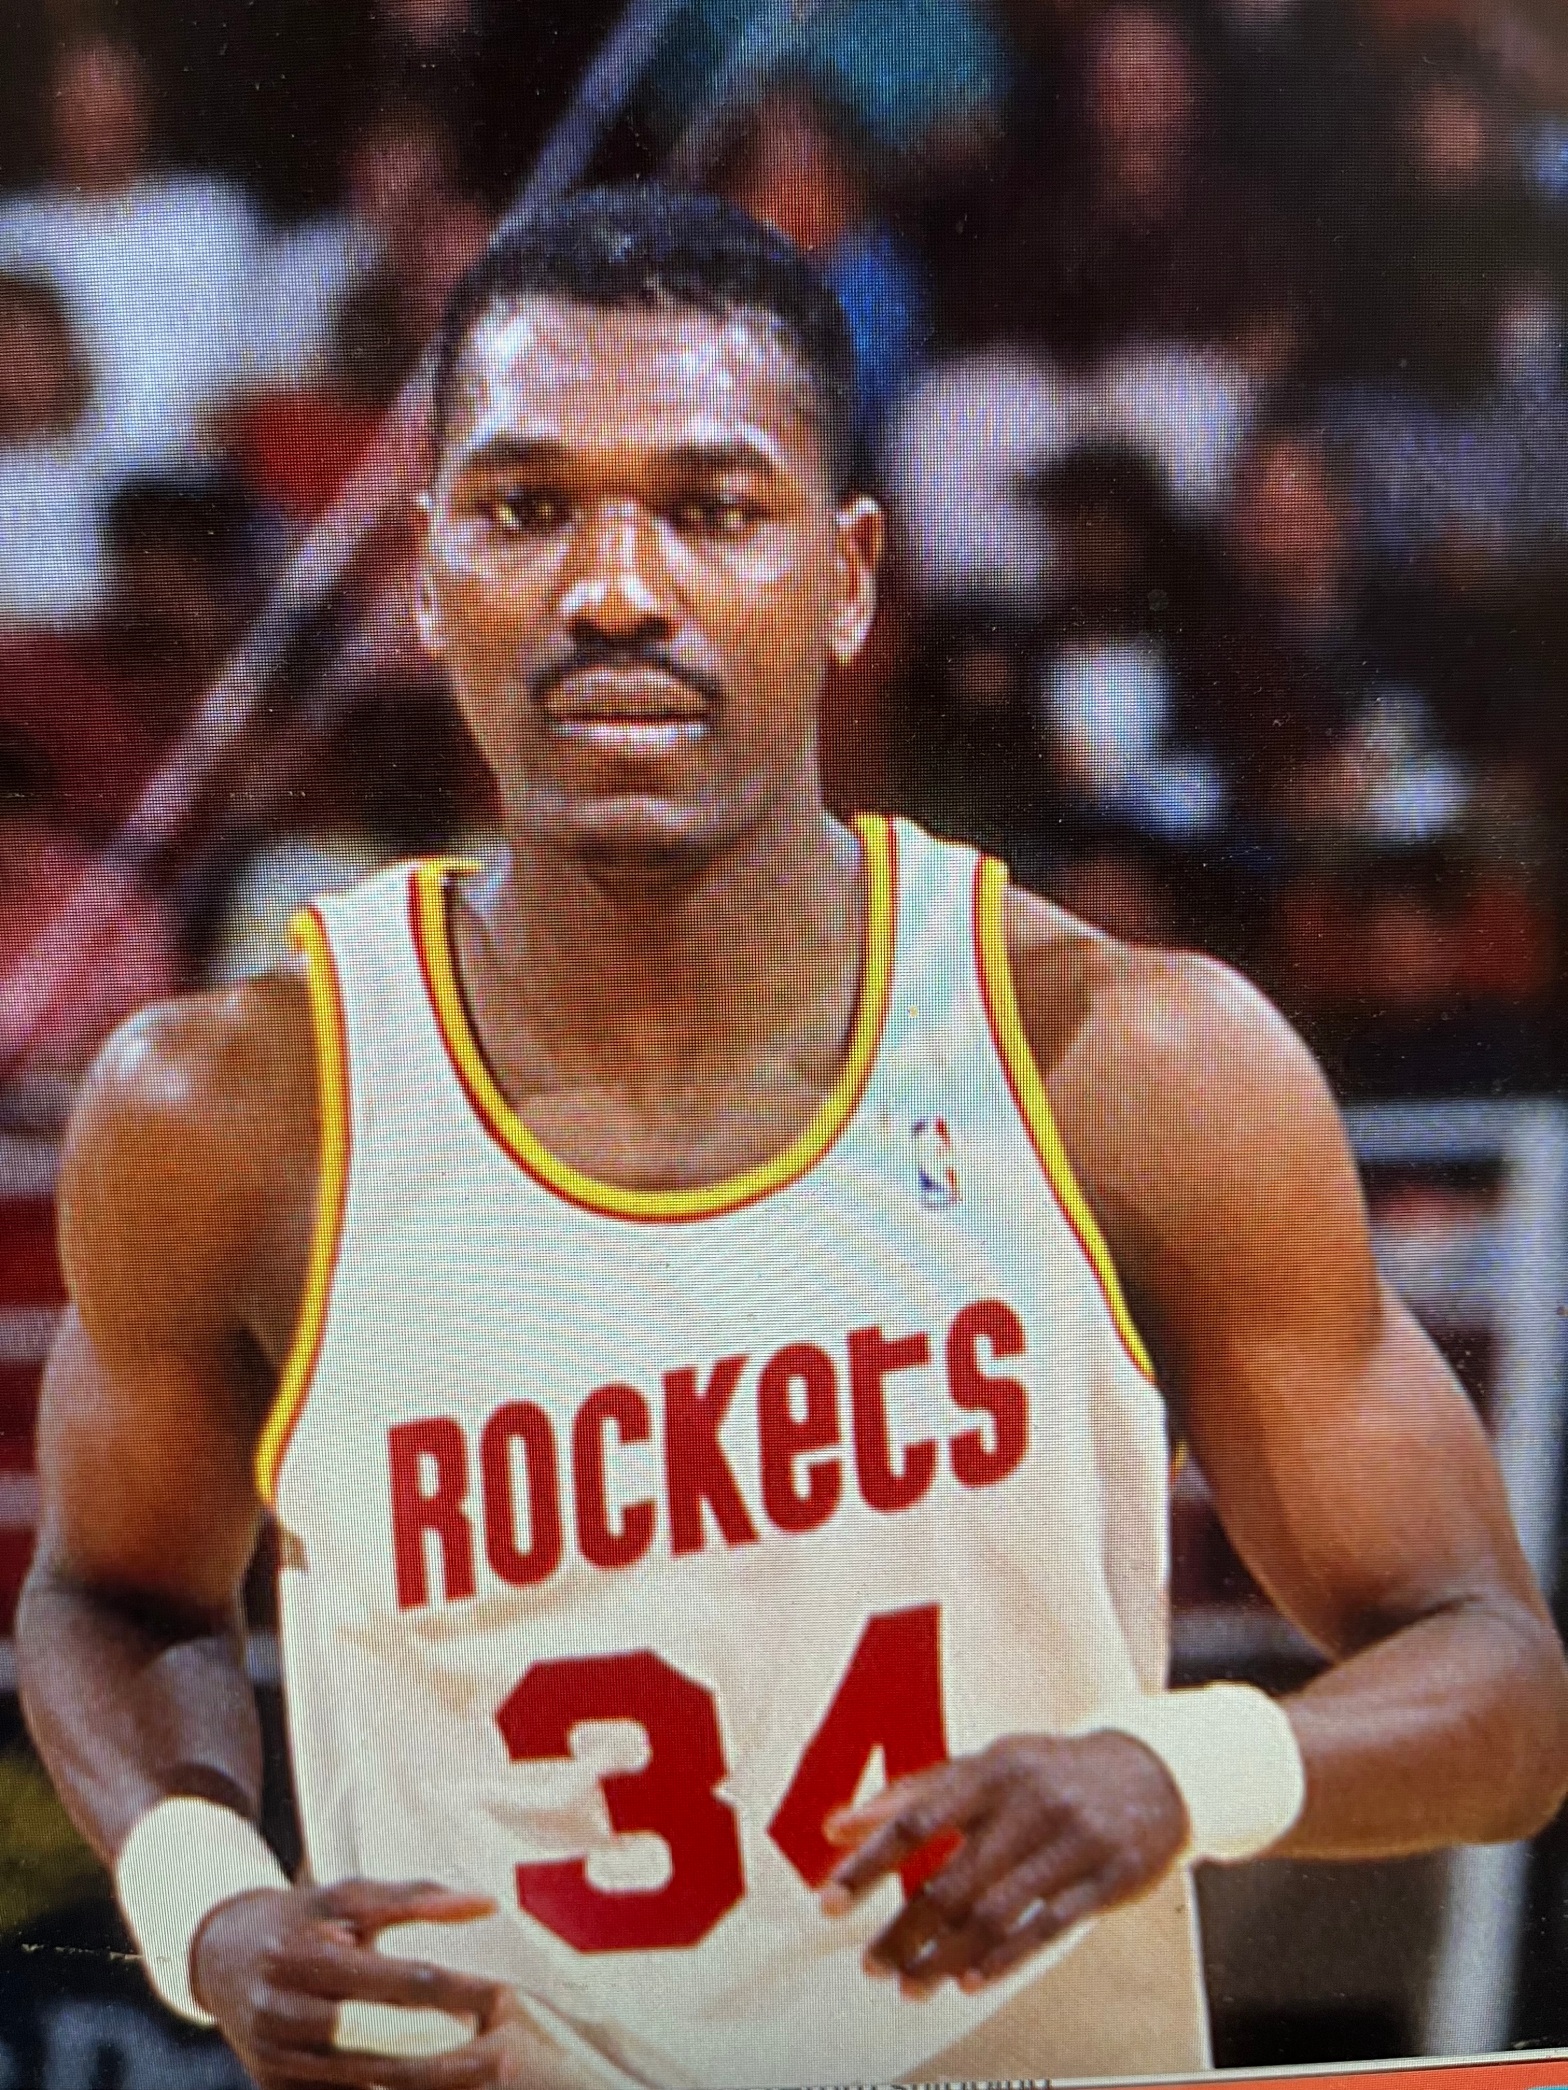 Vintage Houston Rockets NBA Jersey 34 Olajuwon Champion 90s 